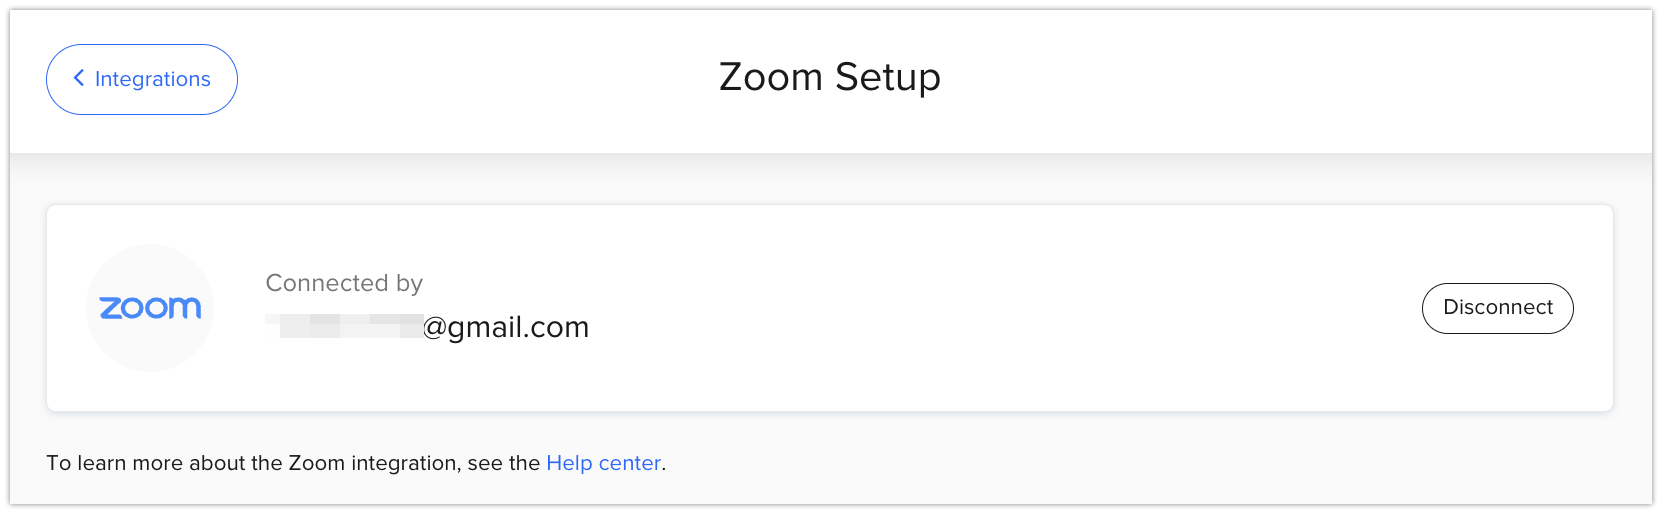 Zoom_Setup.png